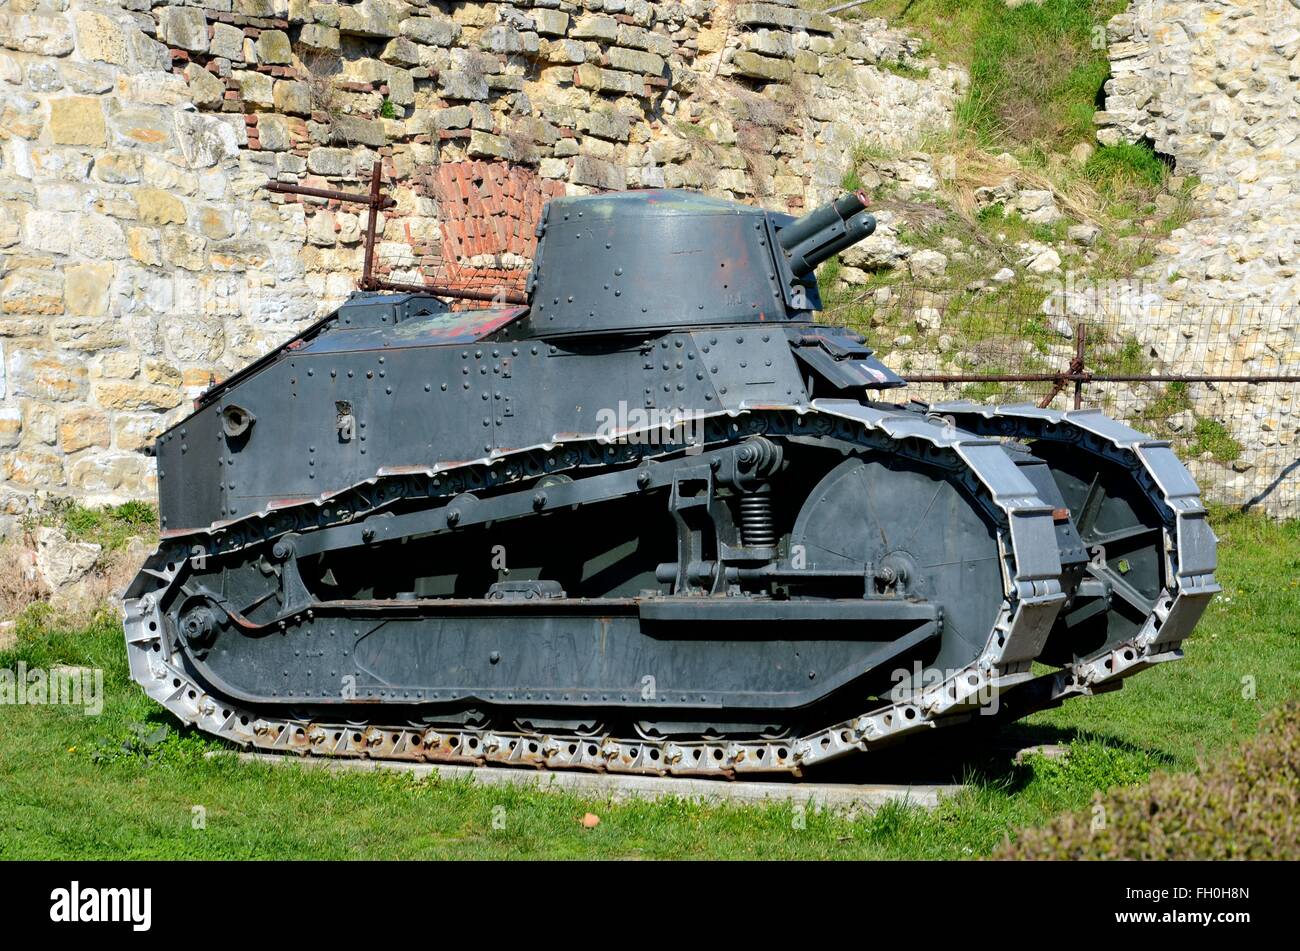 Le français Renault FT 17 char léger révolutionnaire de chenilles et musée militaire de Belgrade Serbie tourelle Banque D'Images